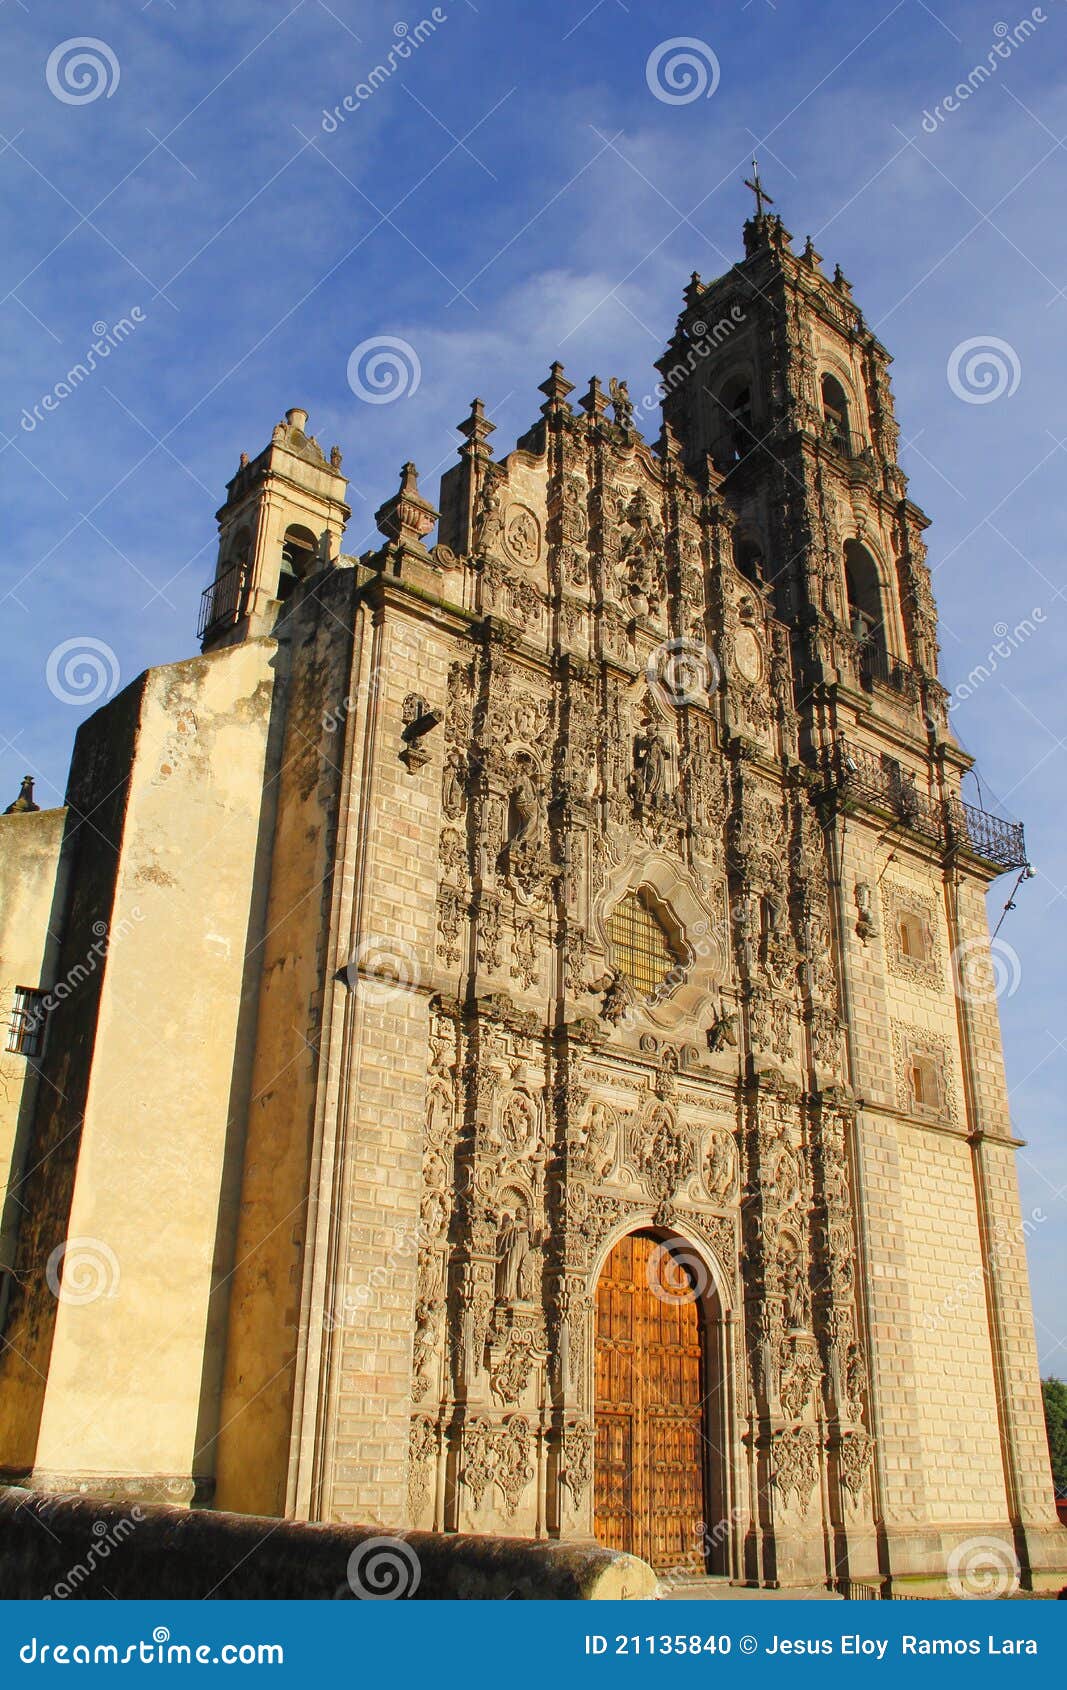 baroque church of the tepotzotlan convent in mexico iv